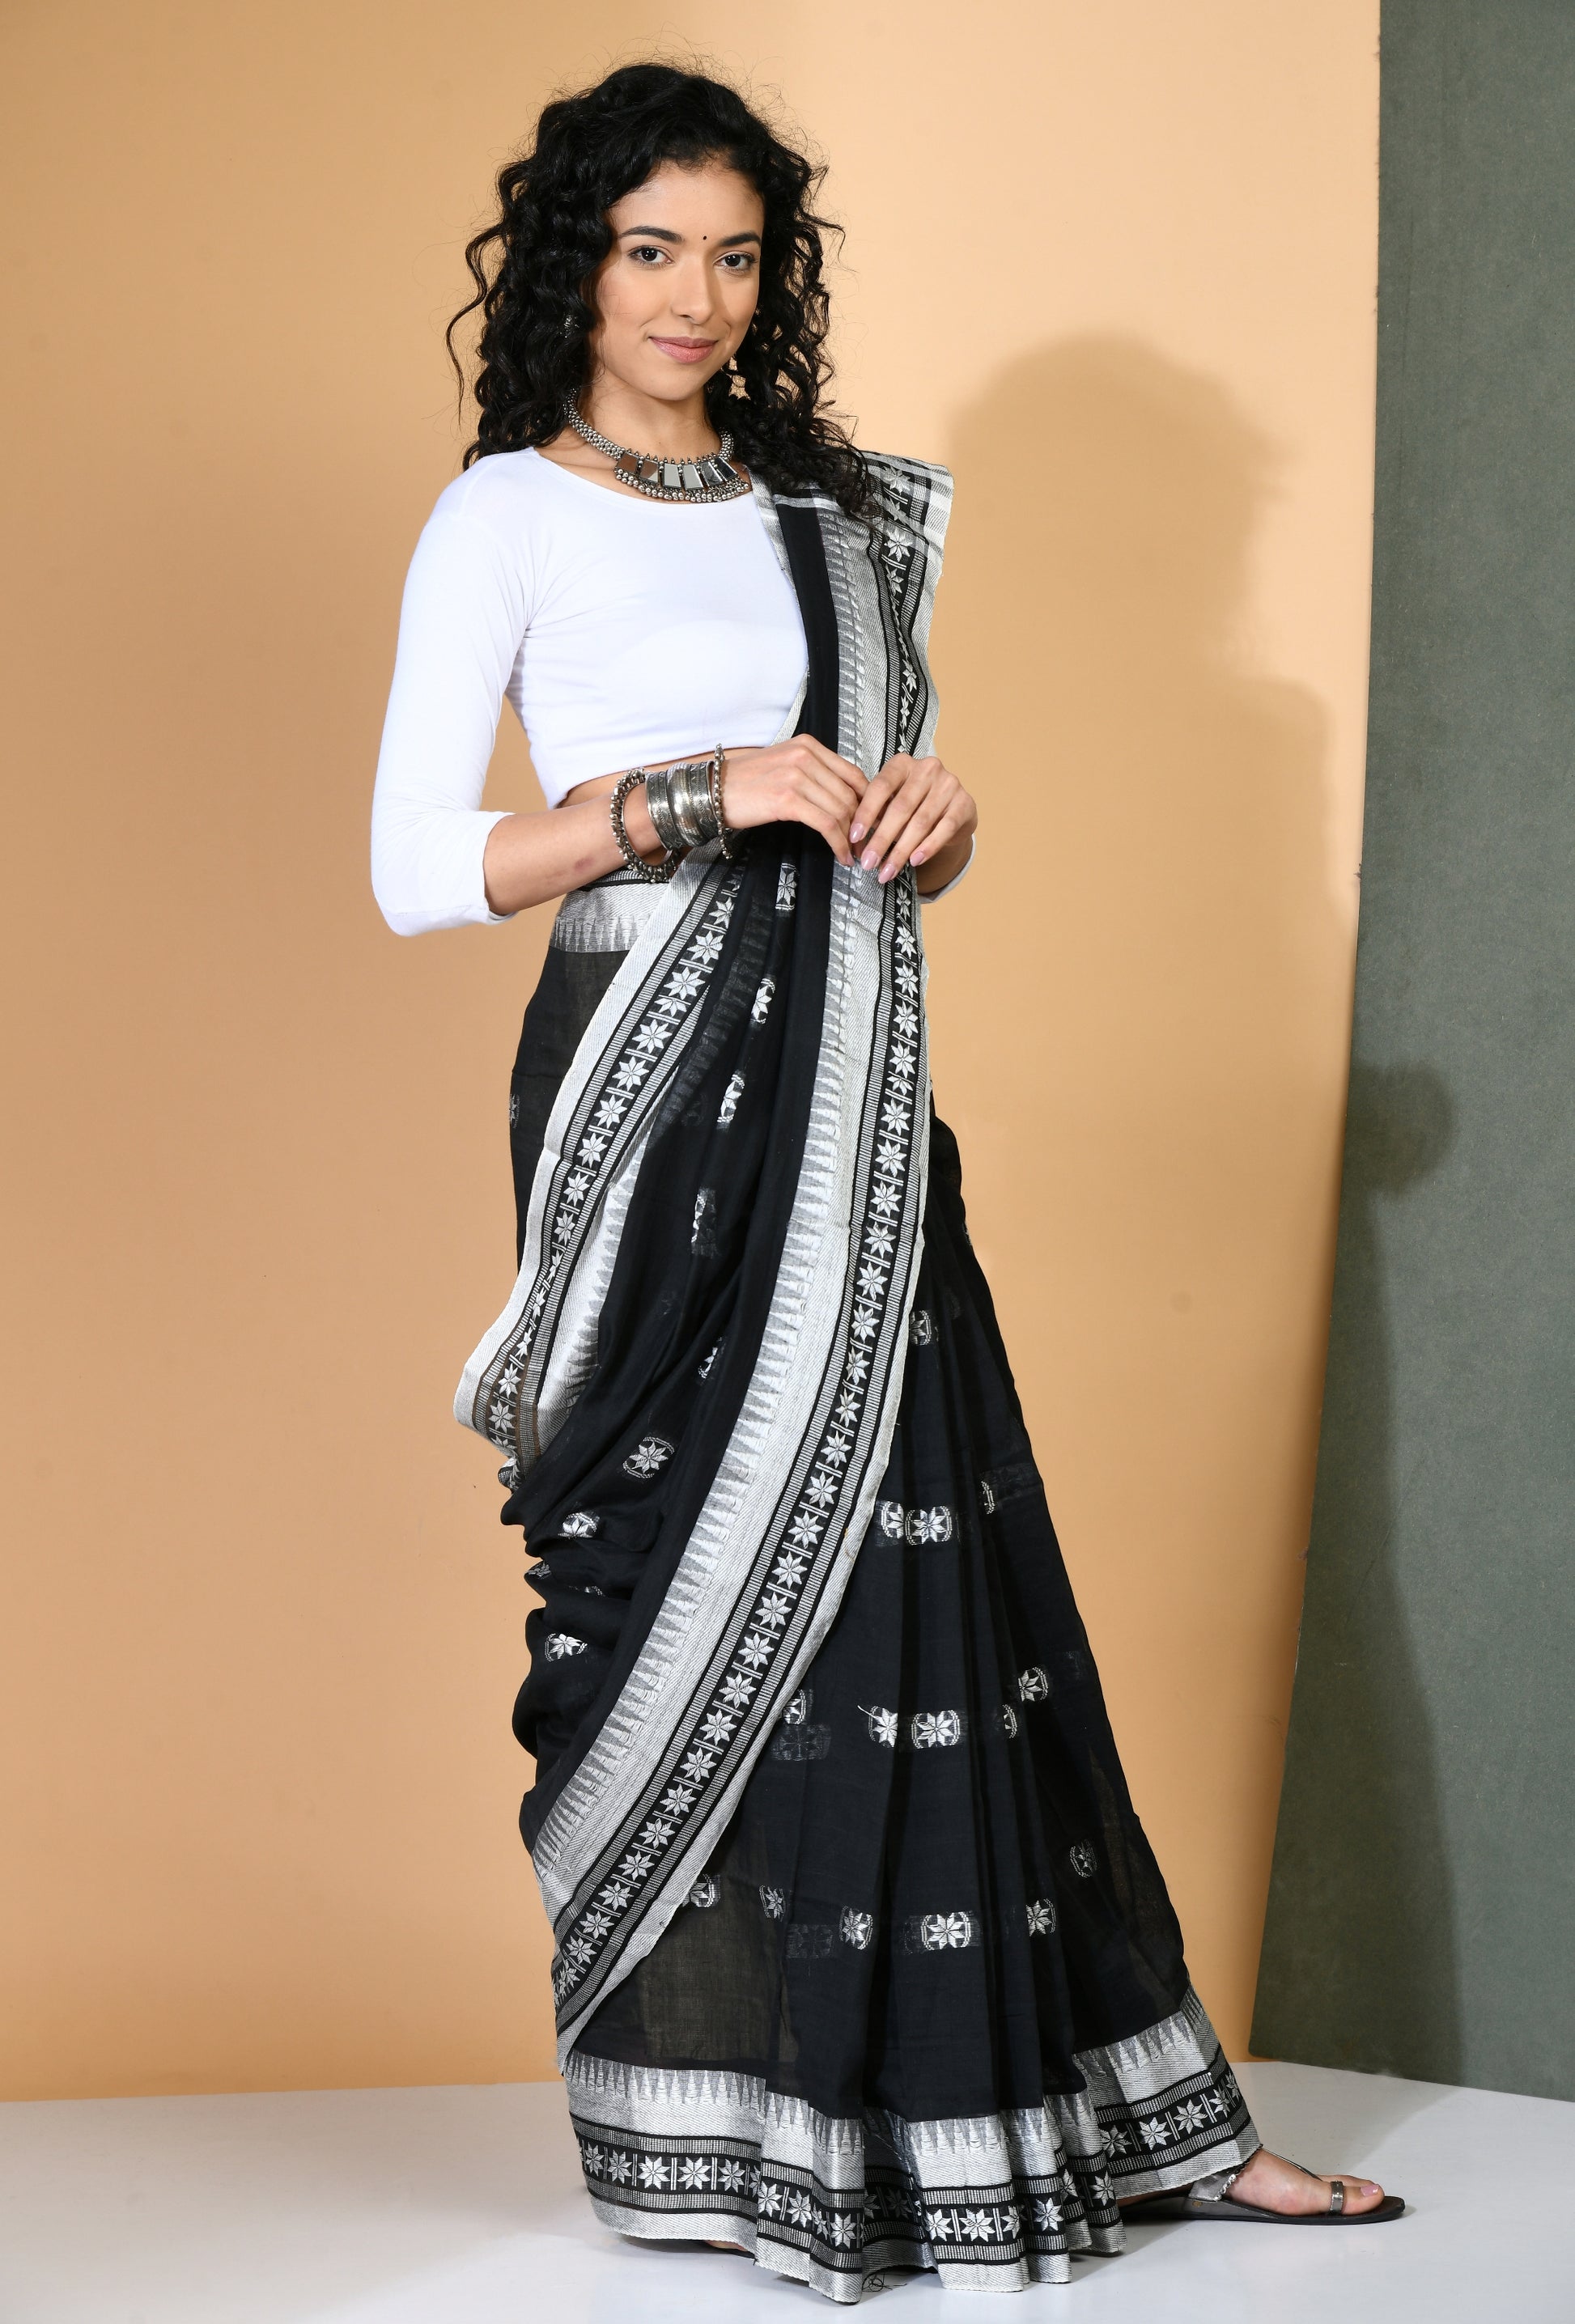 Black Cotton Khadi Saree with white woven border - Swapna Creation